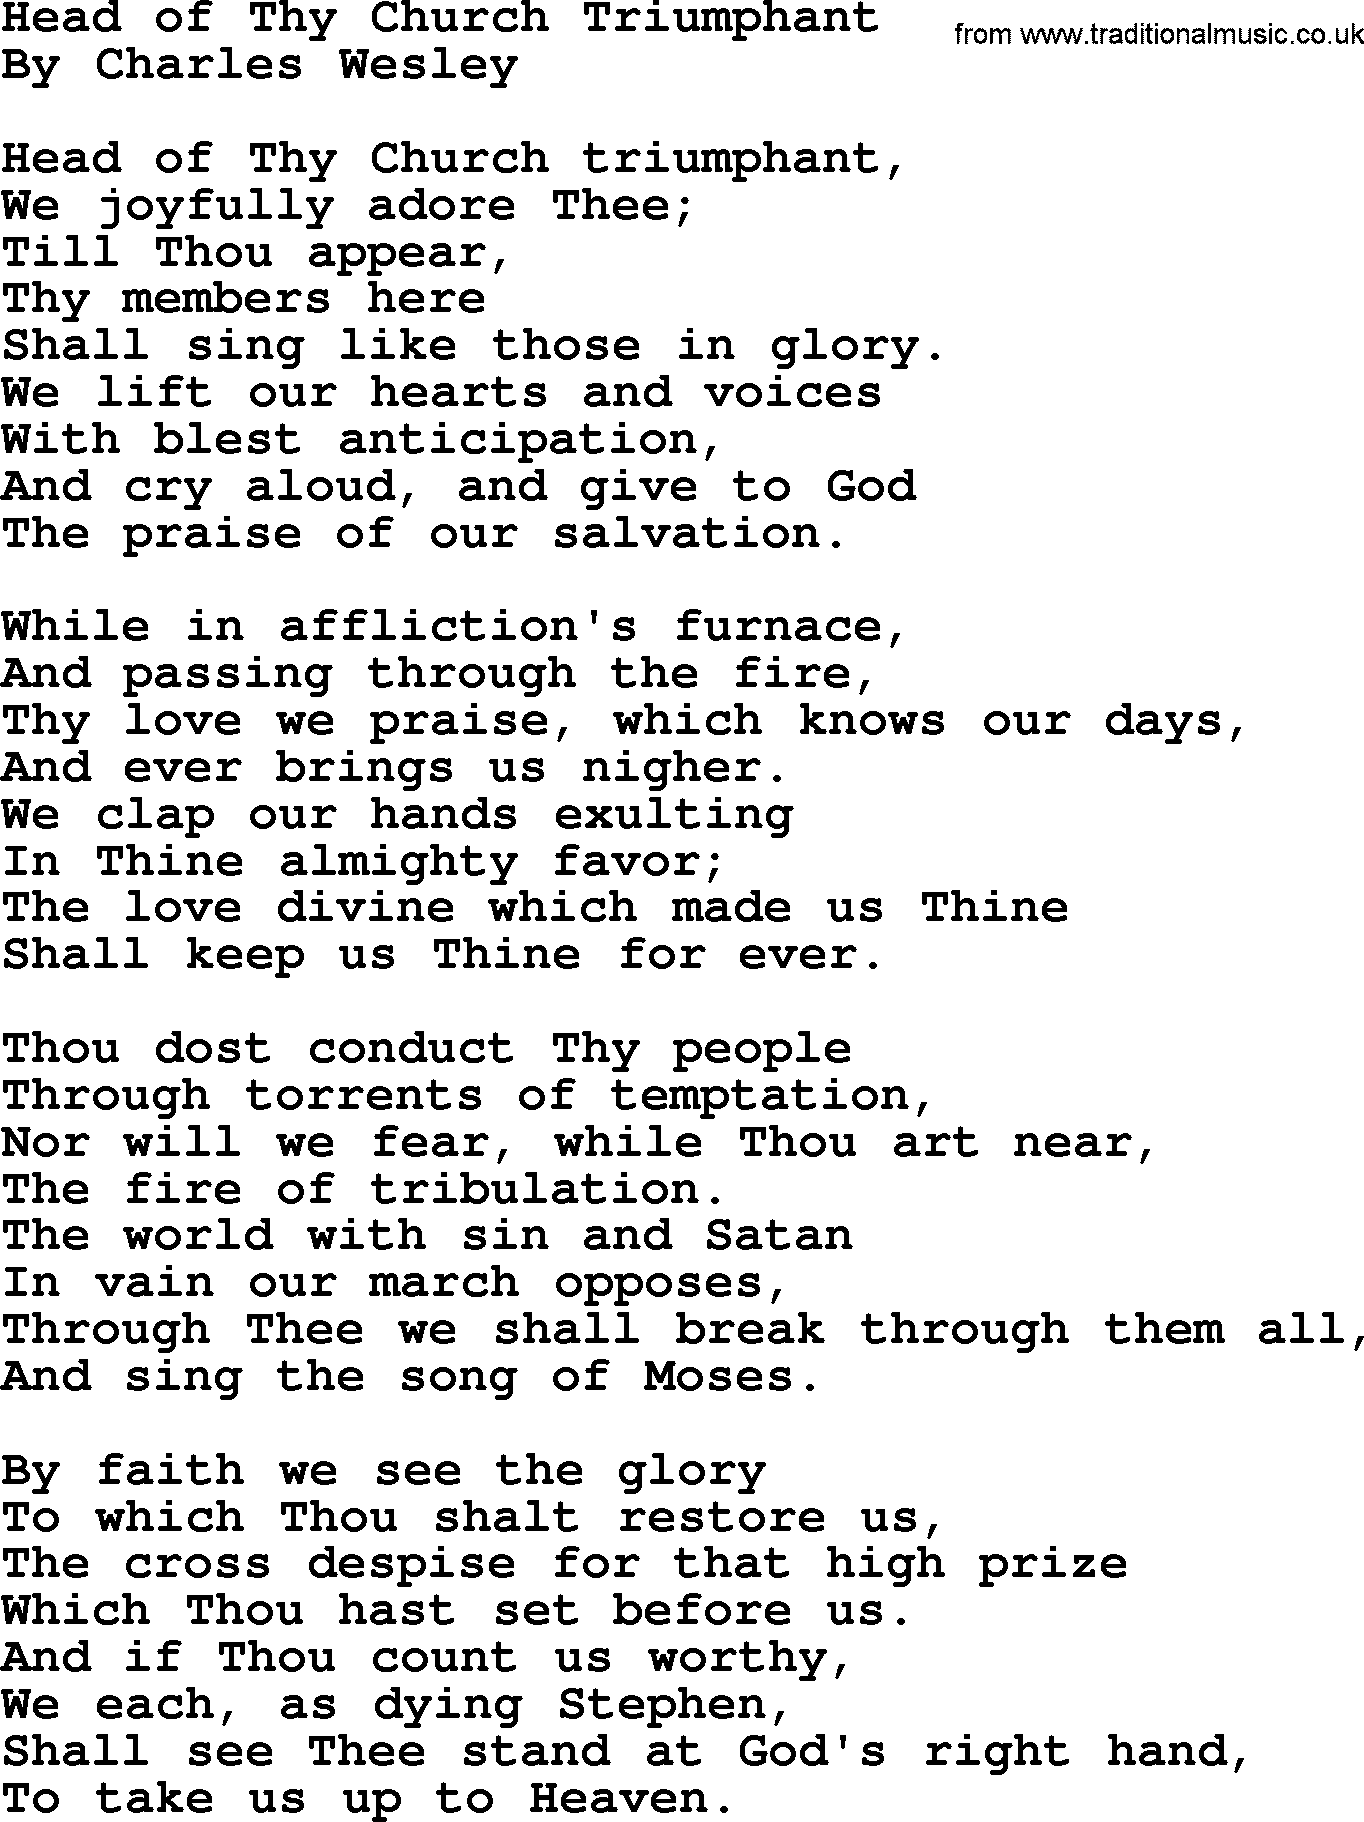 Charles Wesley hymn: Head Of Thy Church Triumphant, lyrics